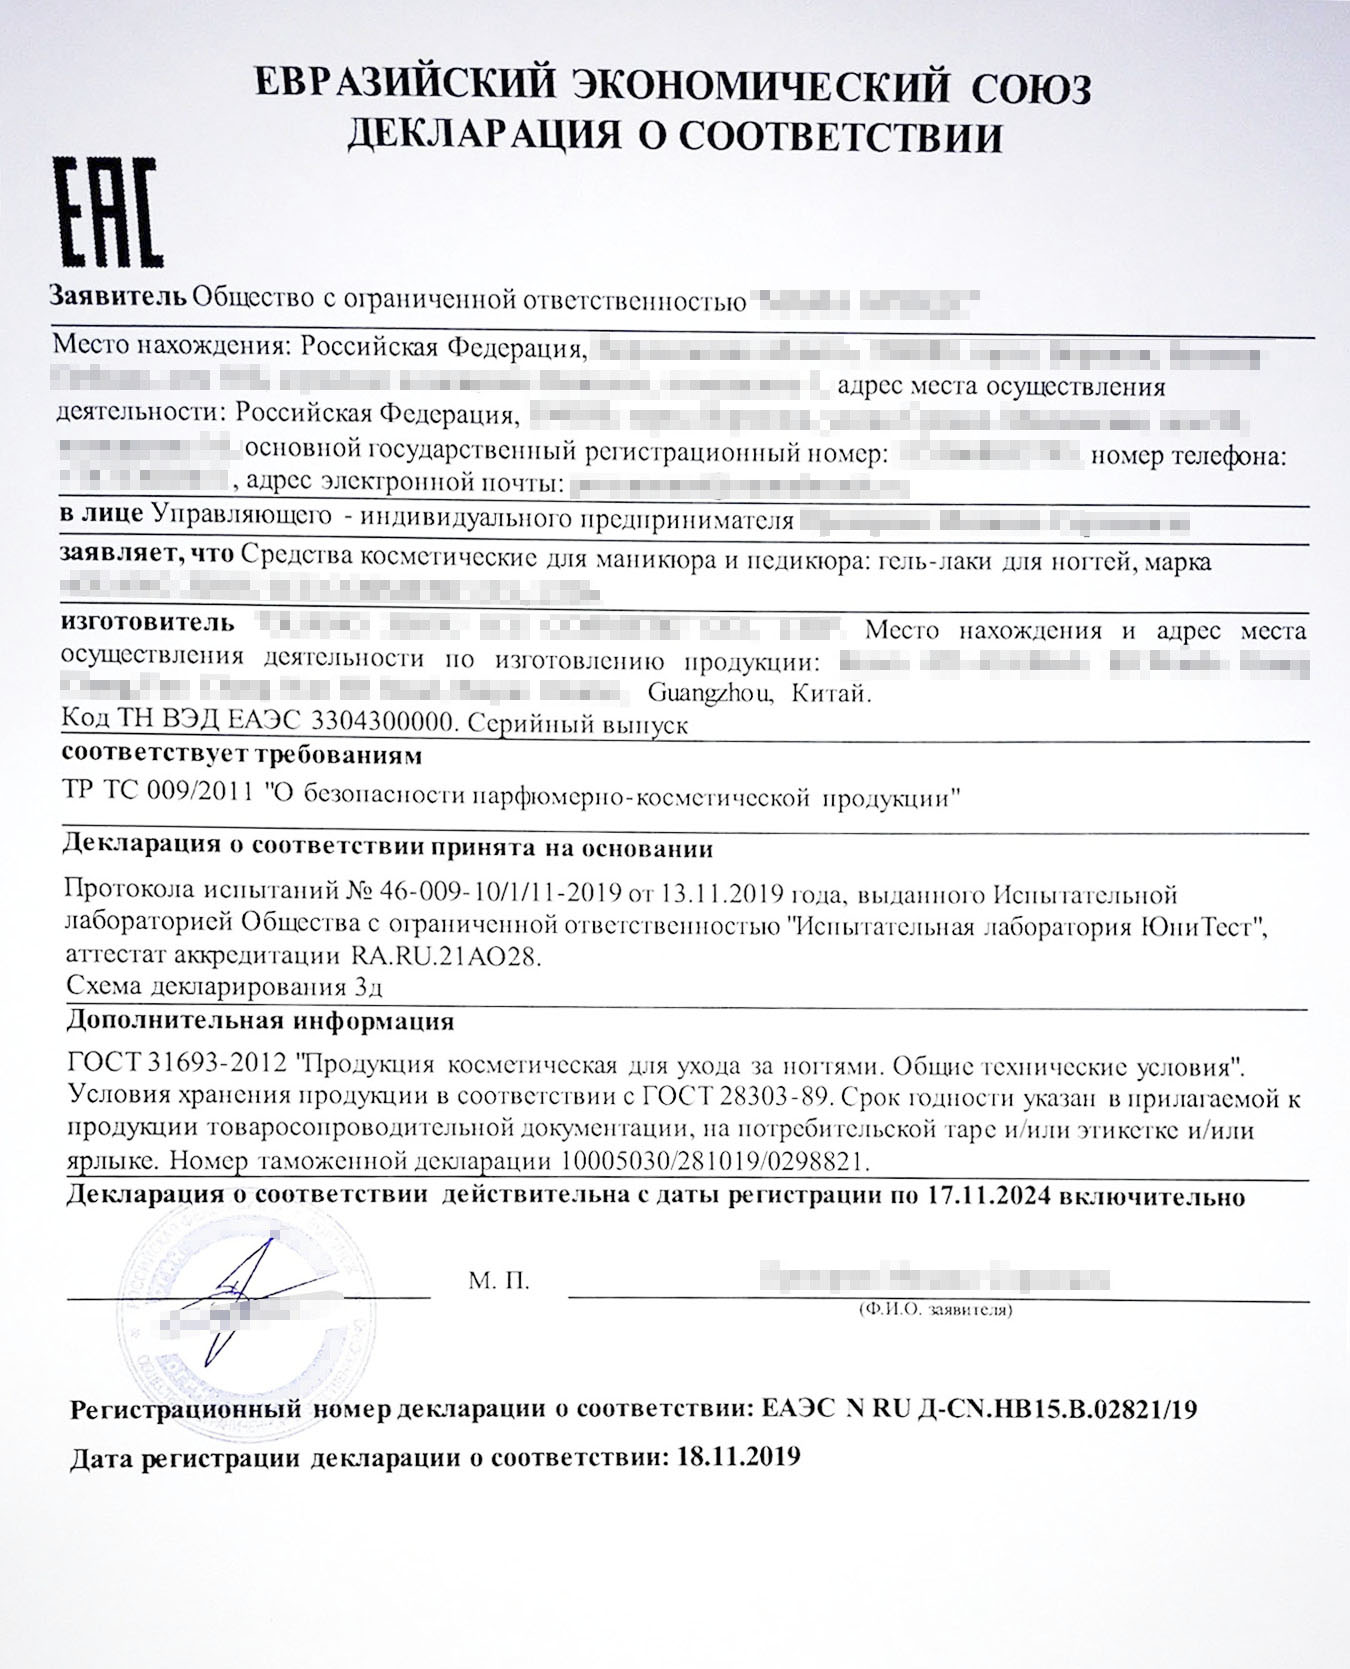 Чтобы привезти в Россию лак для ногтей, нужна декларация о соответствии. Этот документ подтверждает, что лак безопасен и может продаваться на территории страны